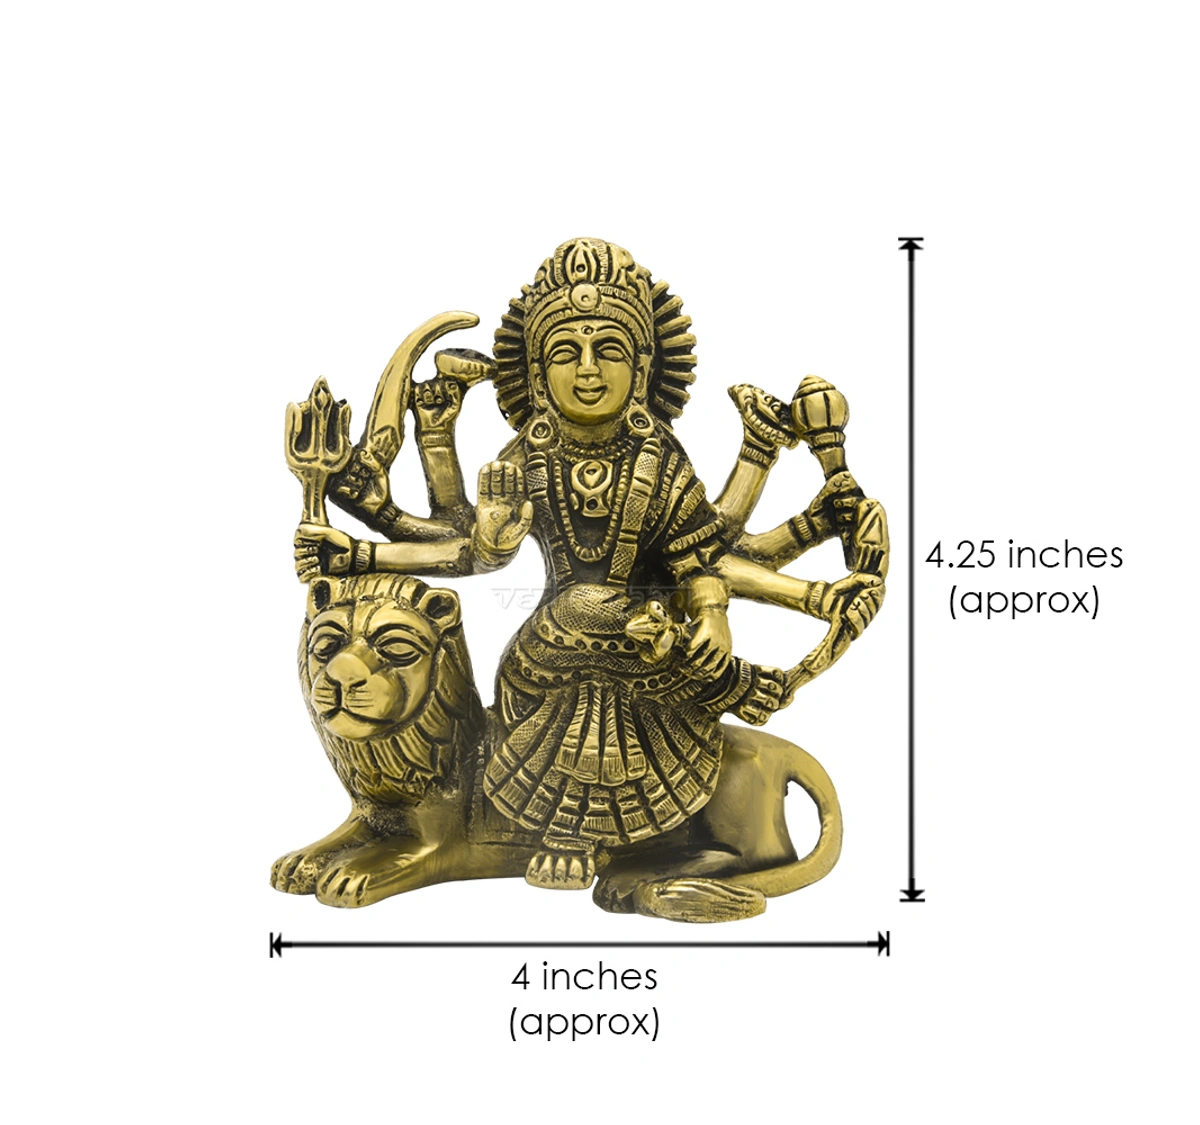 Jai Ambe Gauri, Ambe Maa, Goddess Durga Statue Buy Online ...